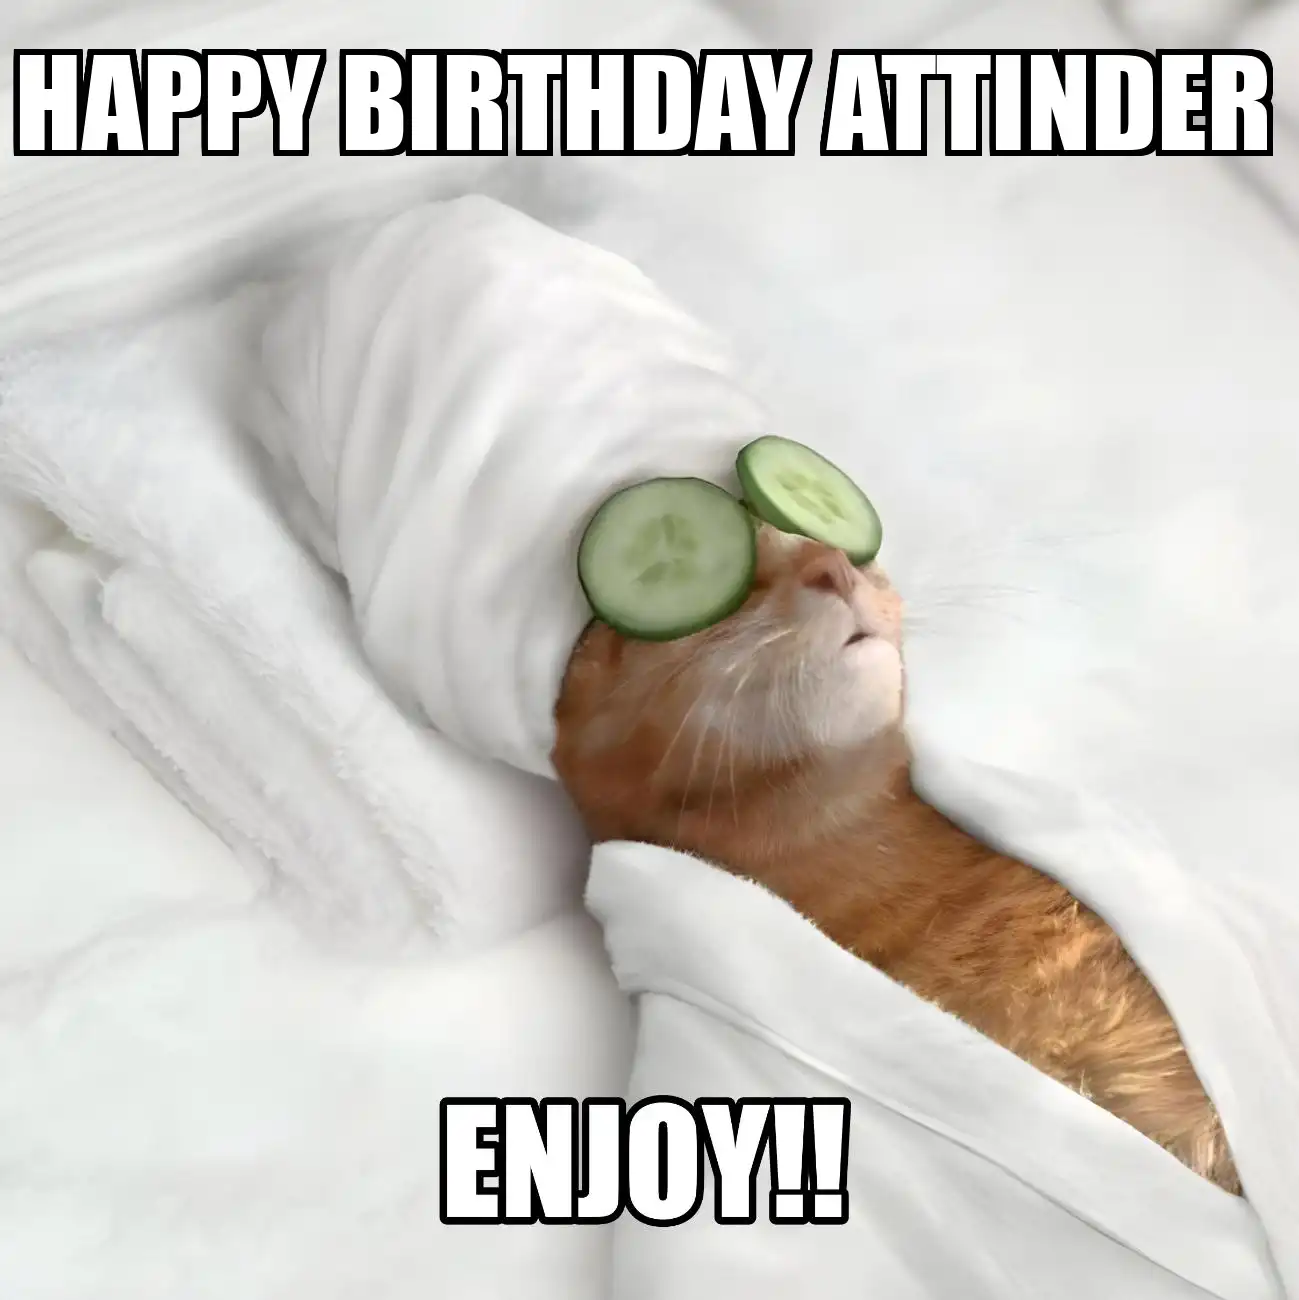 Happy Birthday Attinder Enjoy Cat Meme